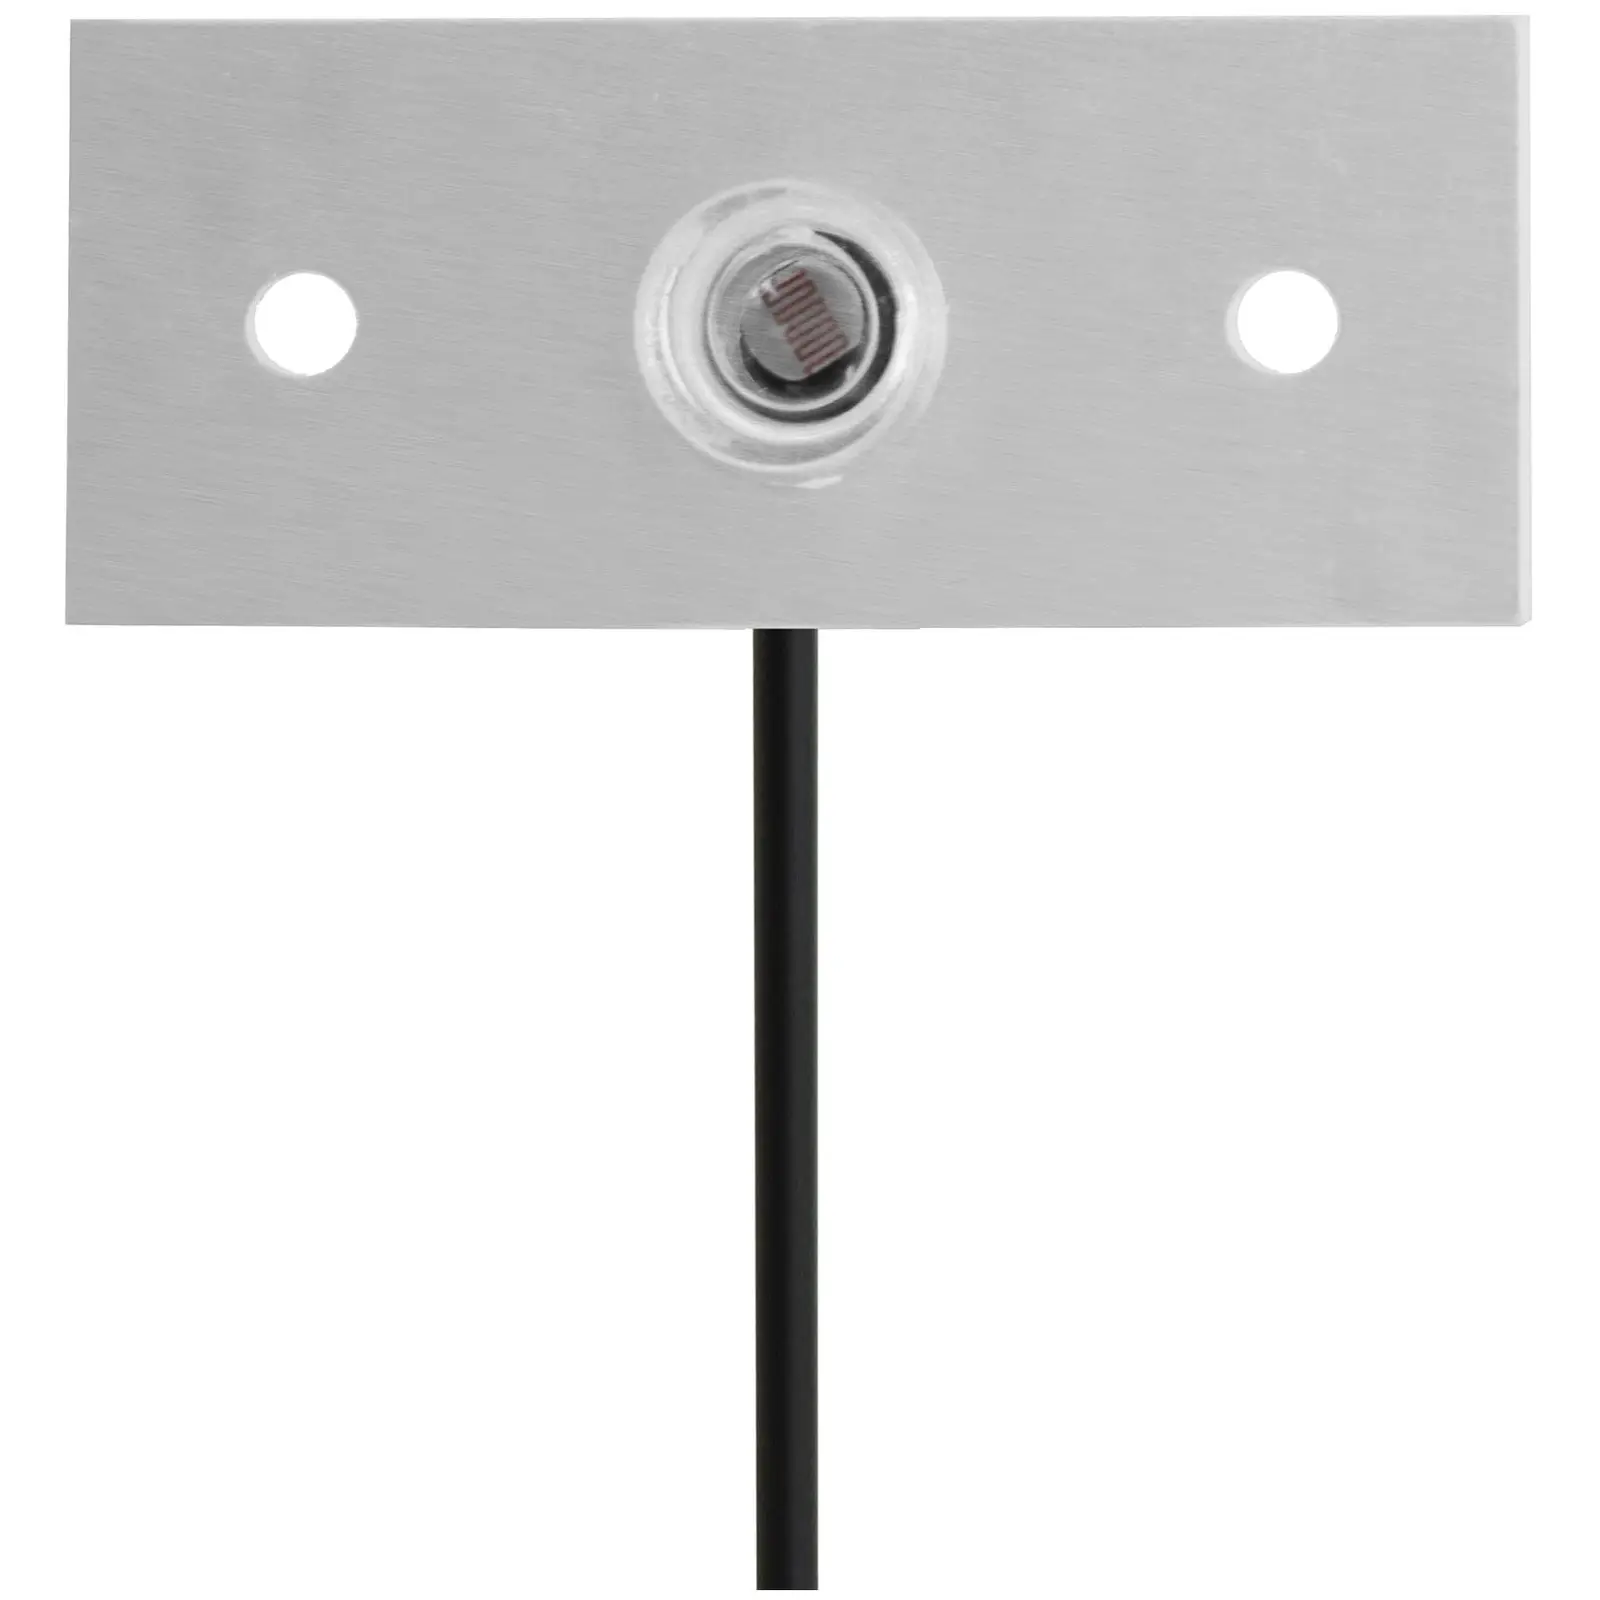 Automatyczne drzwi do kurnika - timer / czujnik światła - zasilacz - wodoodporna obudowa - automatyczne blokowanie - funkcja zapobiegająca blokowaniu